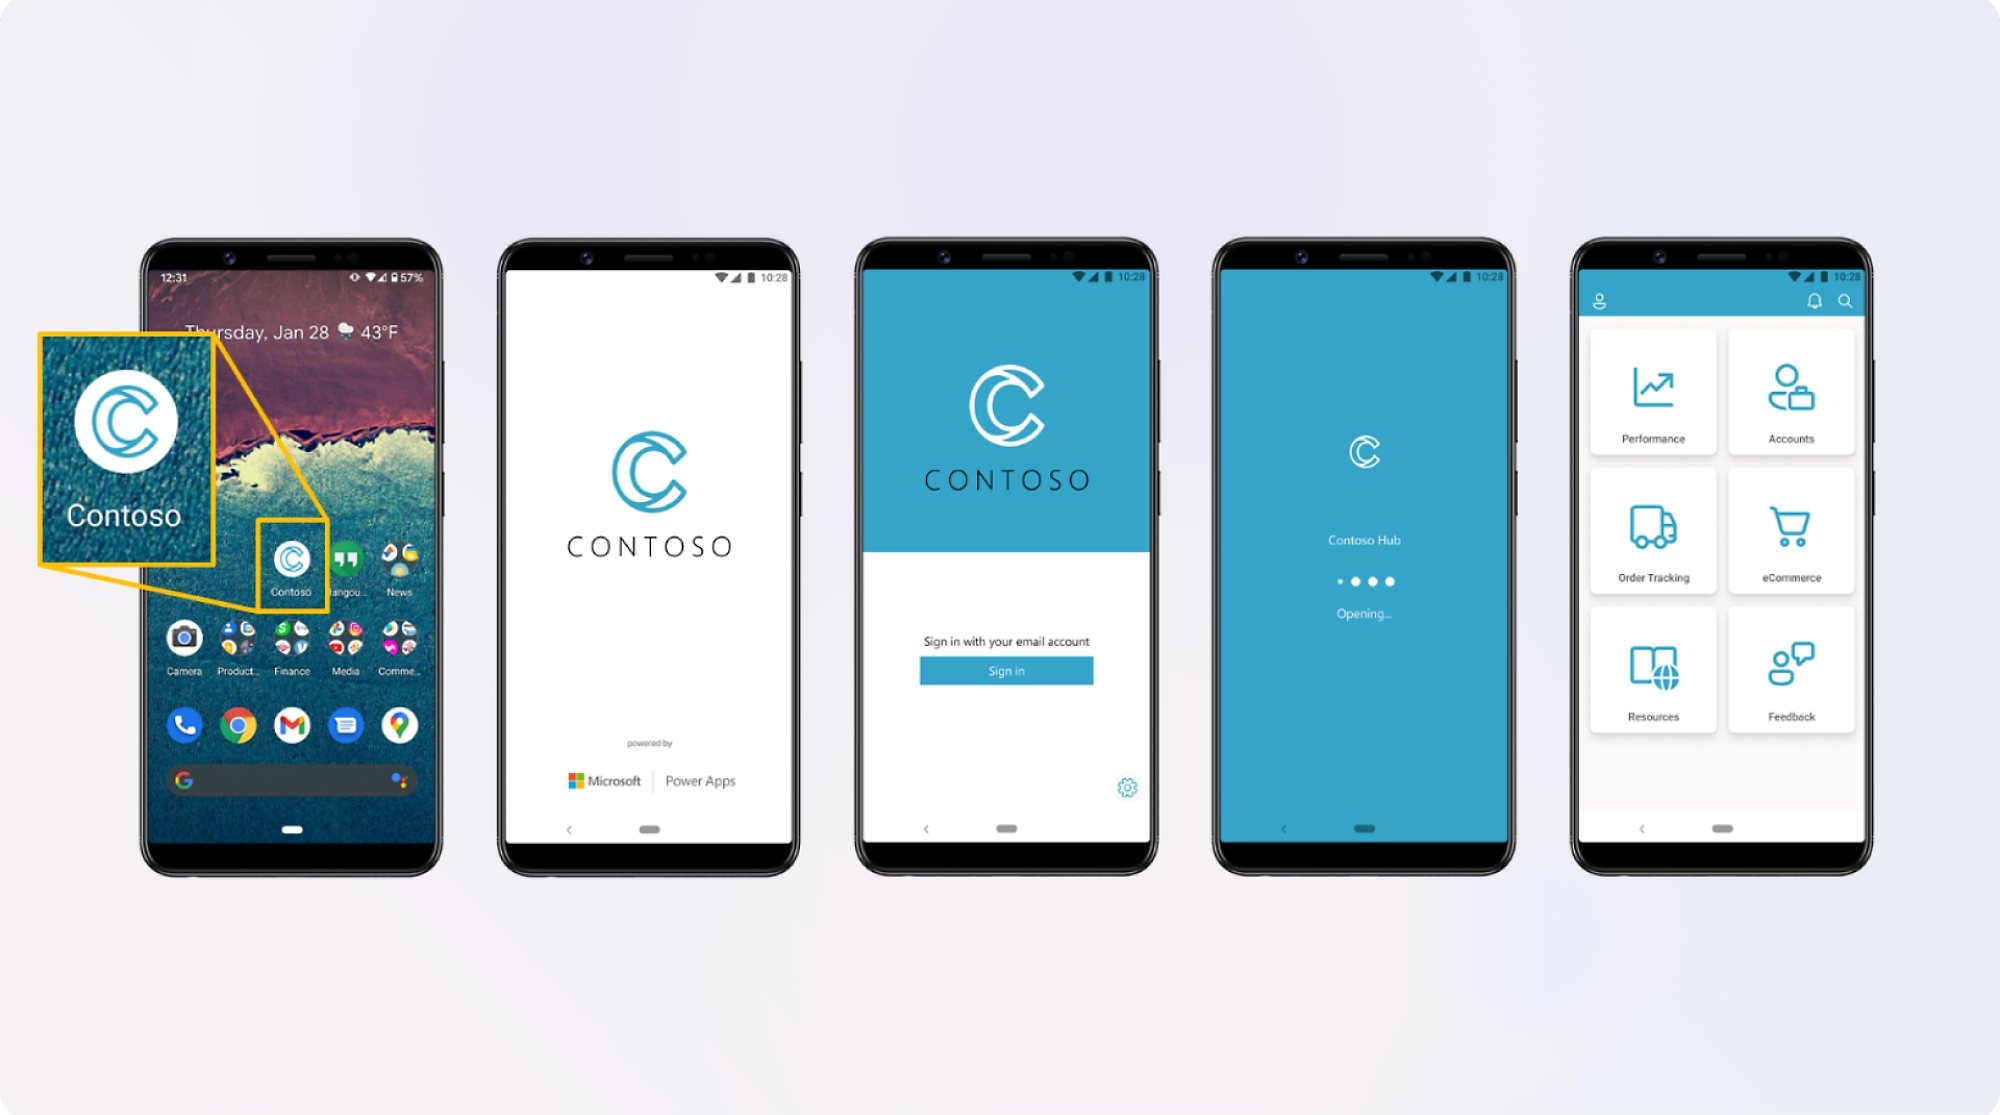 Pięć smartfonów wyświetlających różne ekrany aplikacji „contoso” przedstawiające stronę logowania i ekran główny